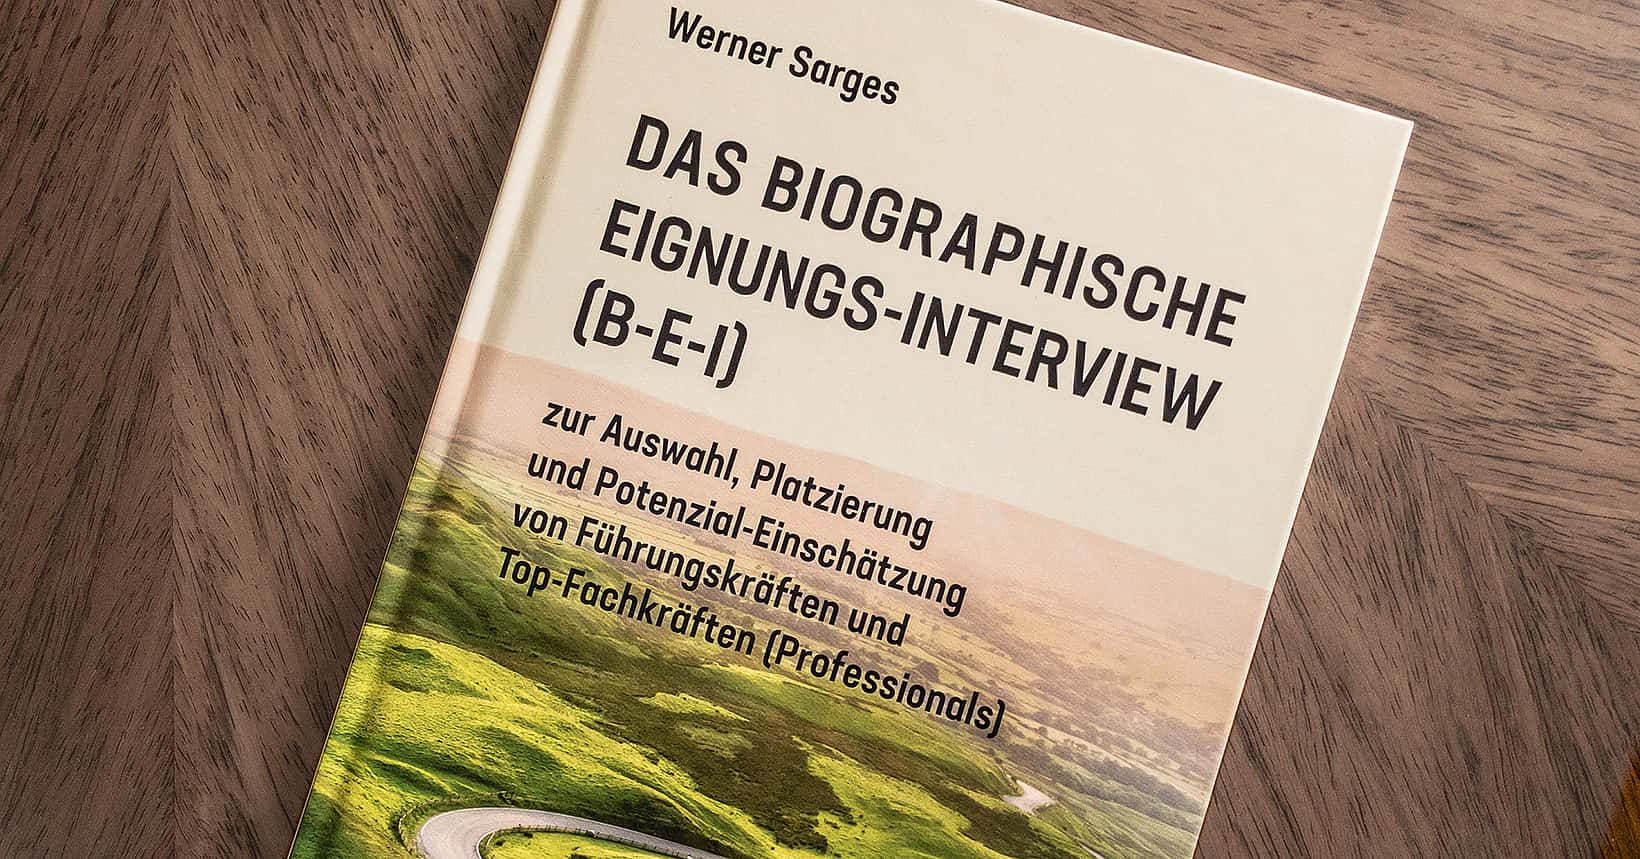 (c) Biographisches-interview.de